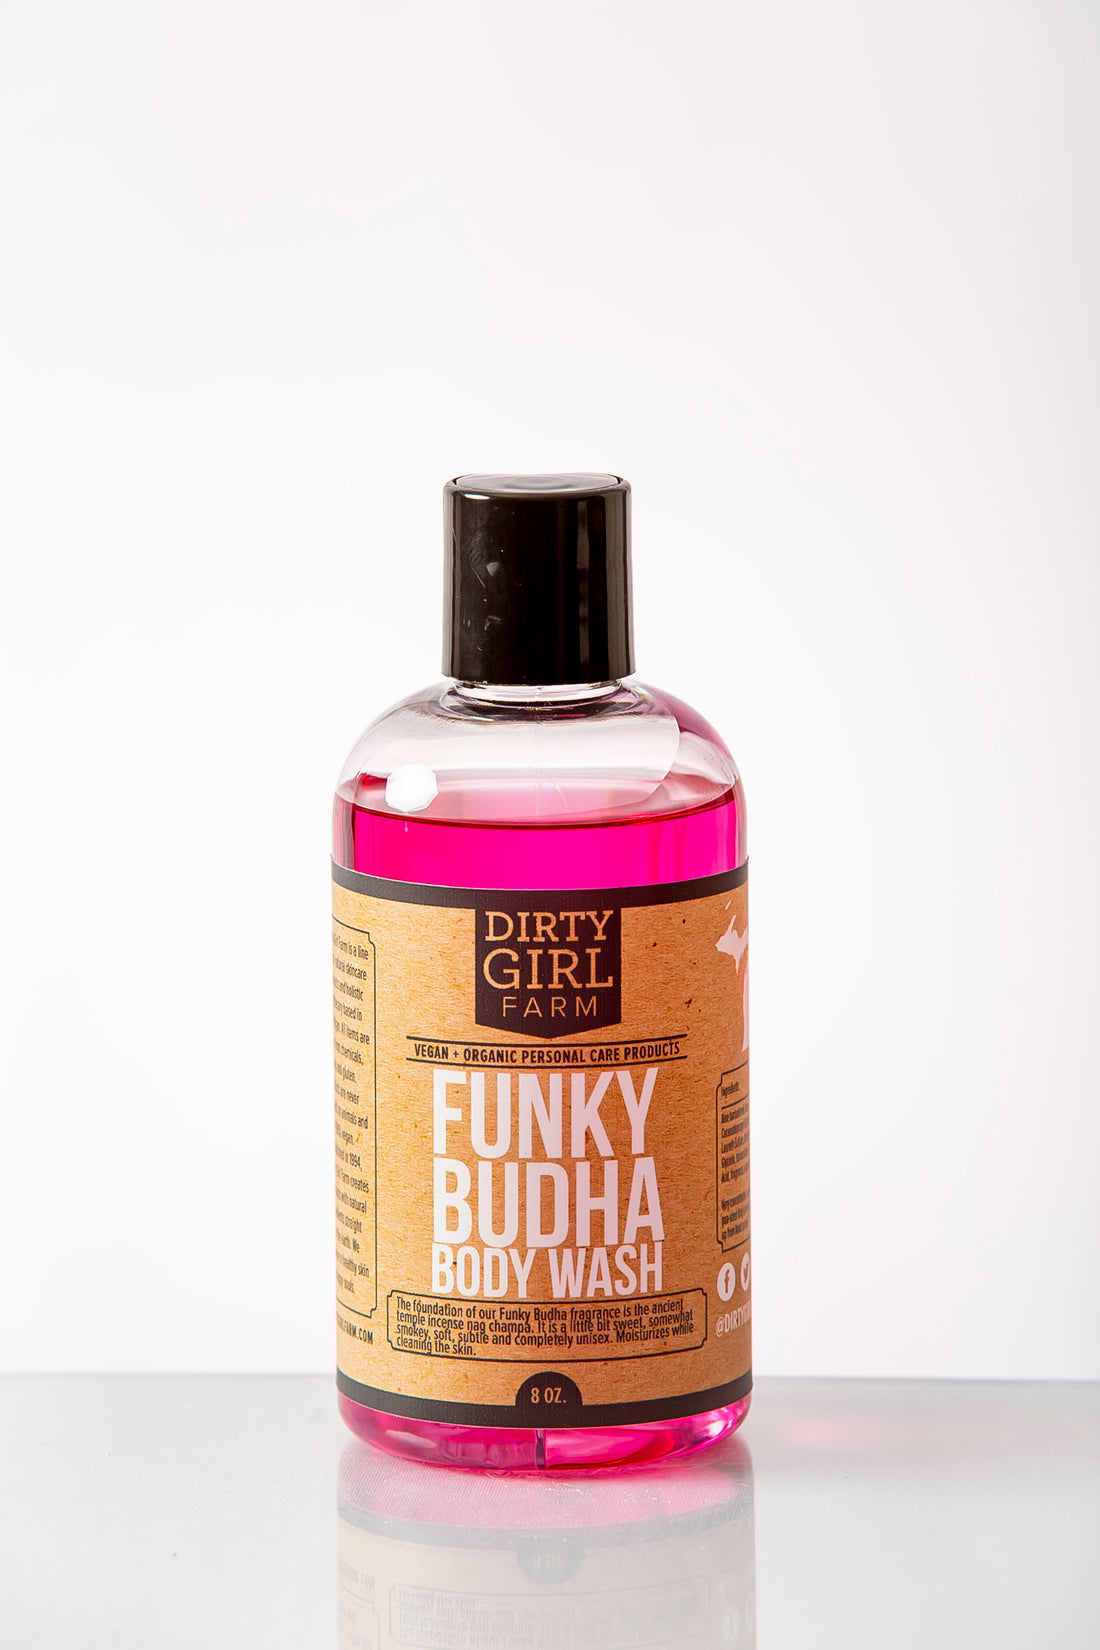 Dirty Girl Farm Funky Budha Body Wash